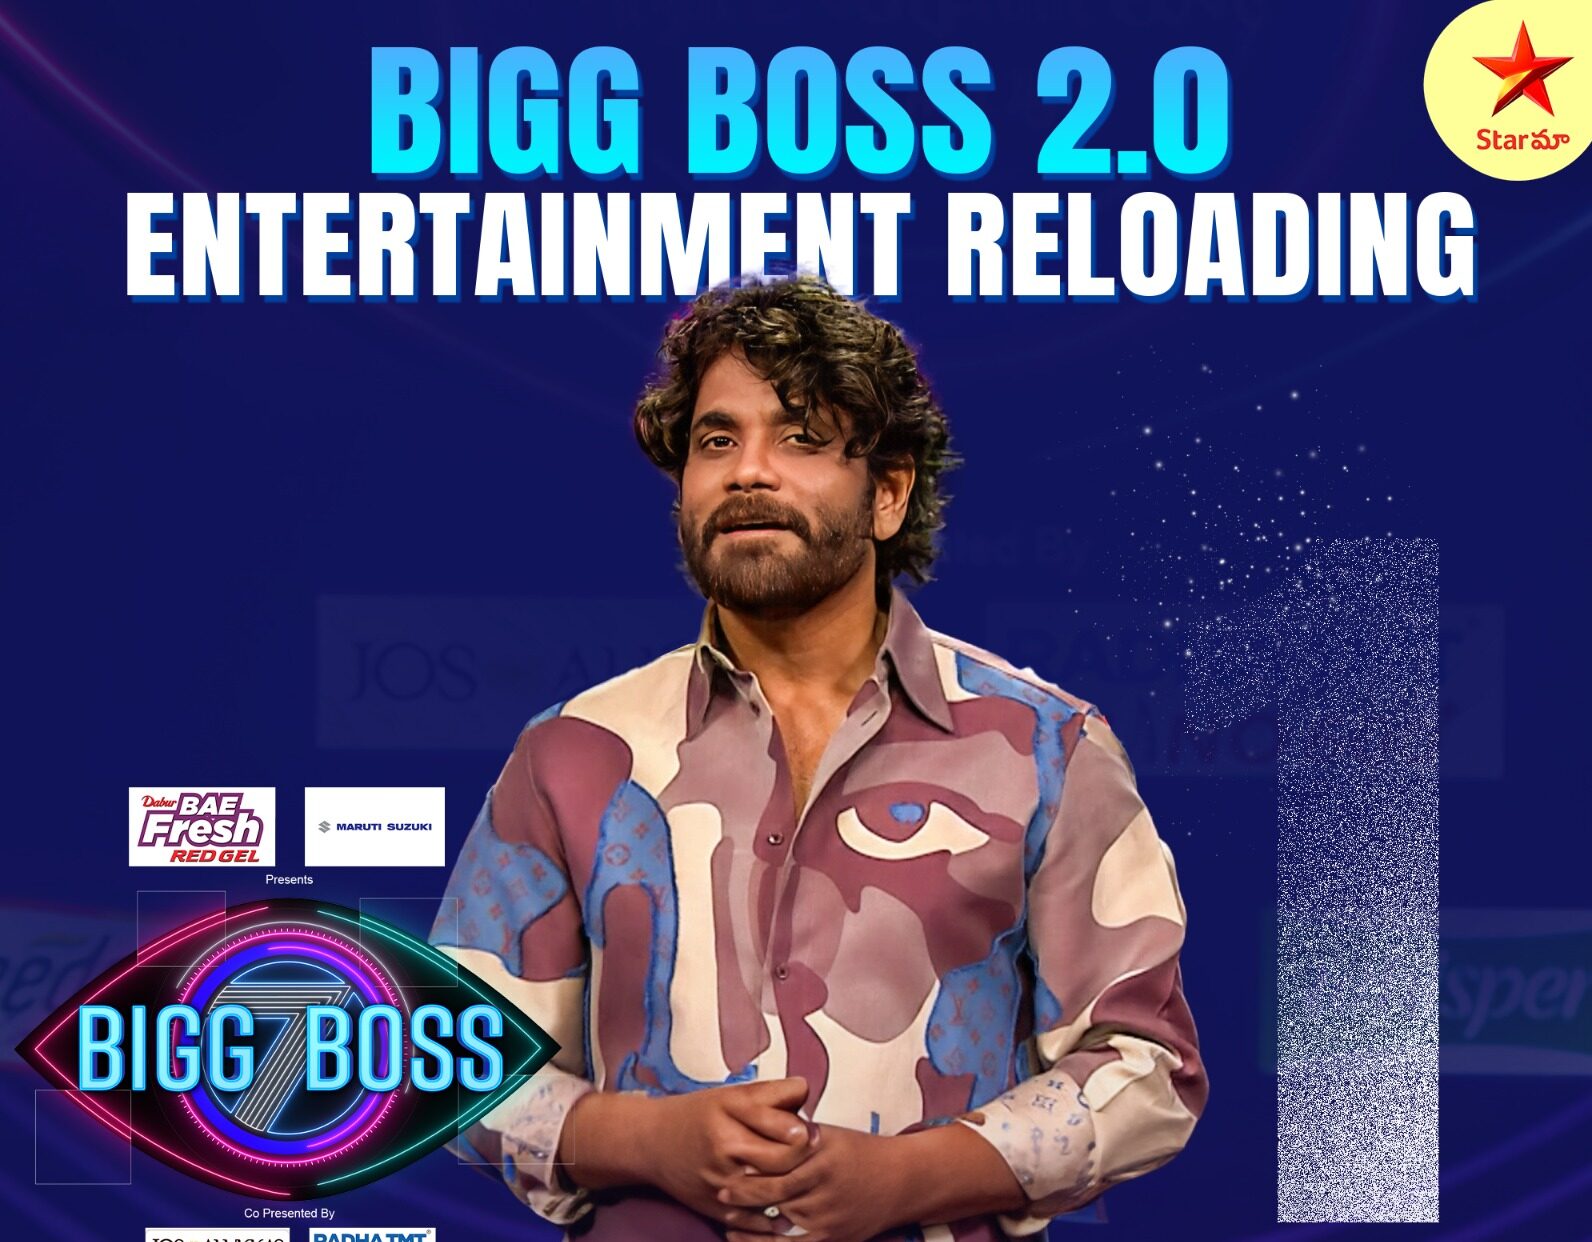 Launch of Bigg Boss 2.0